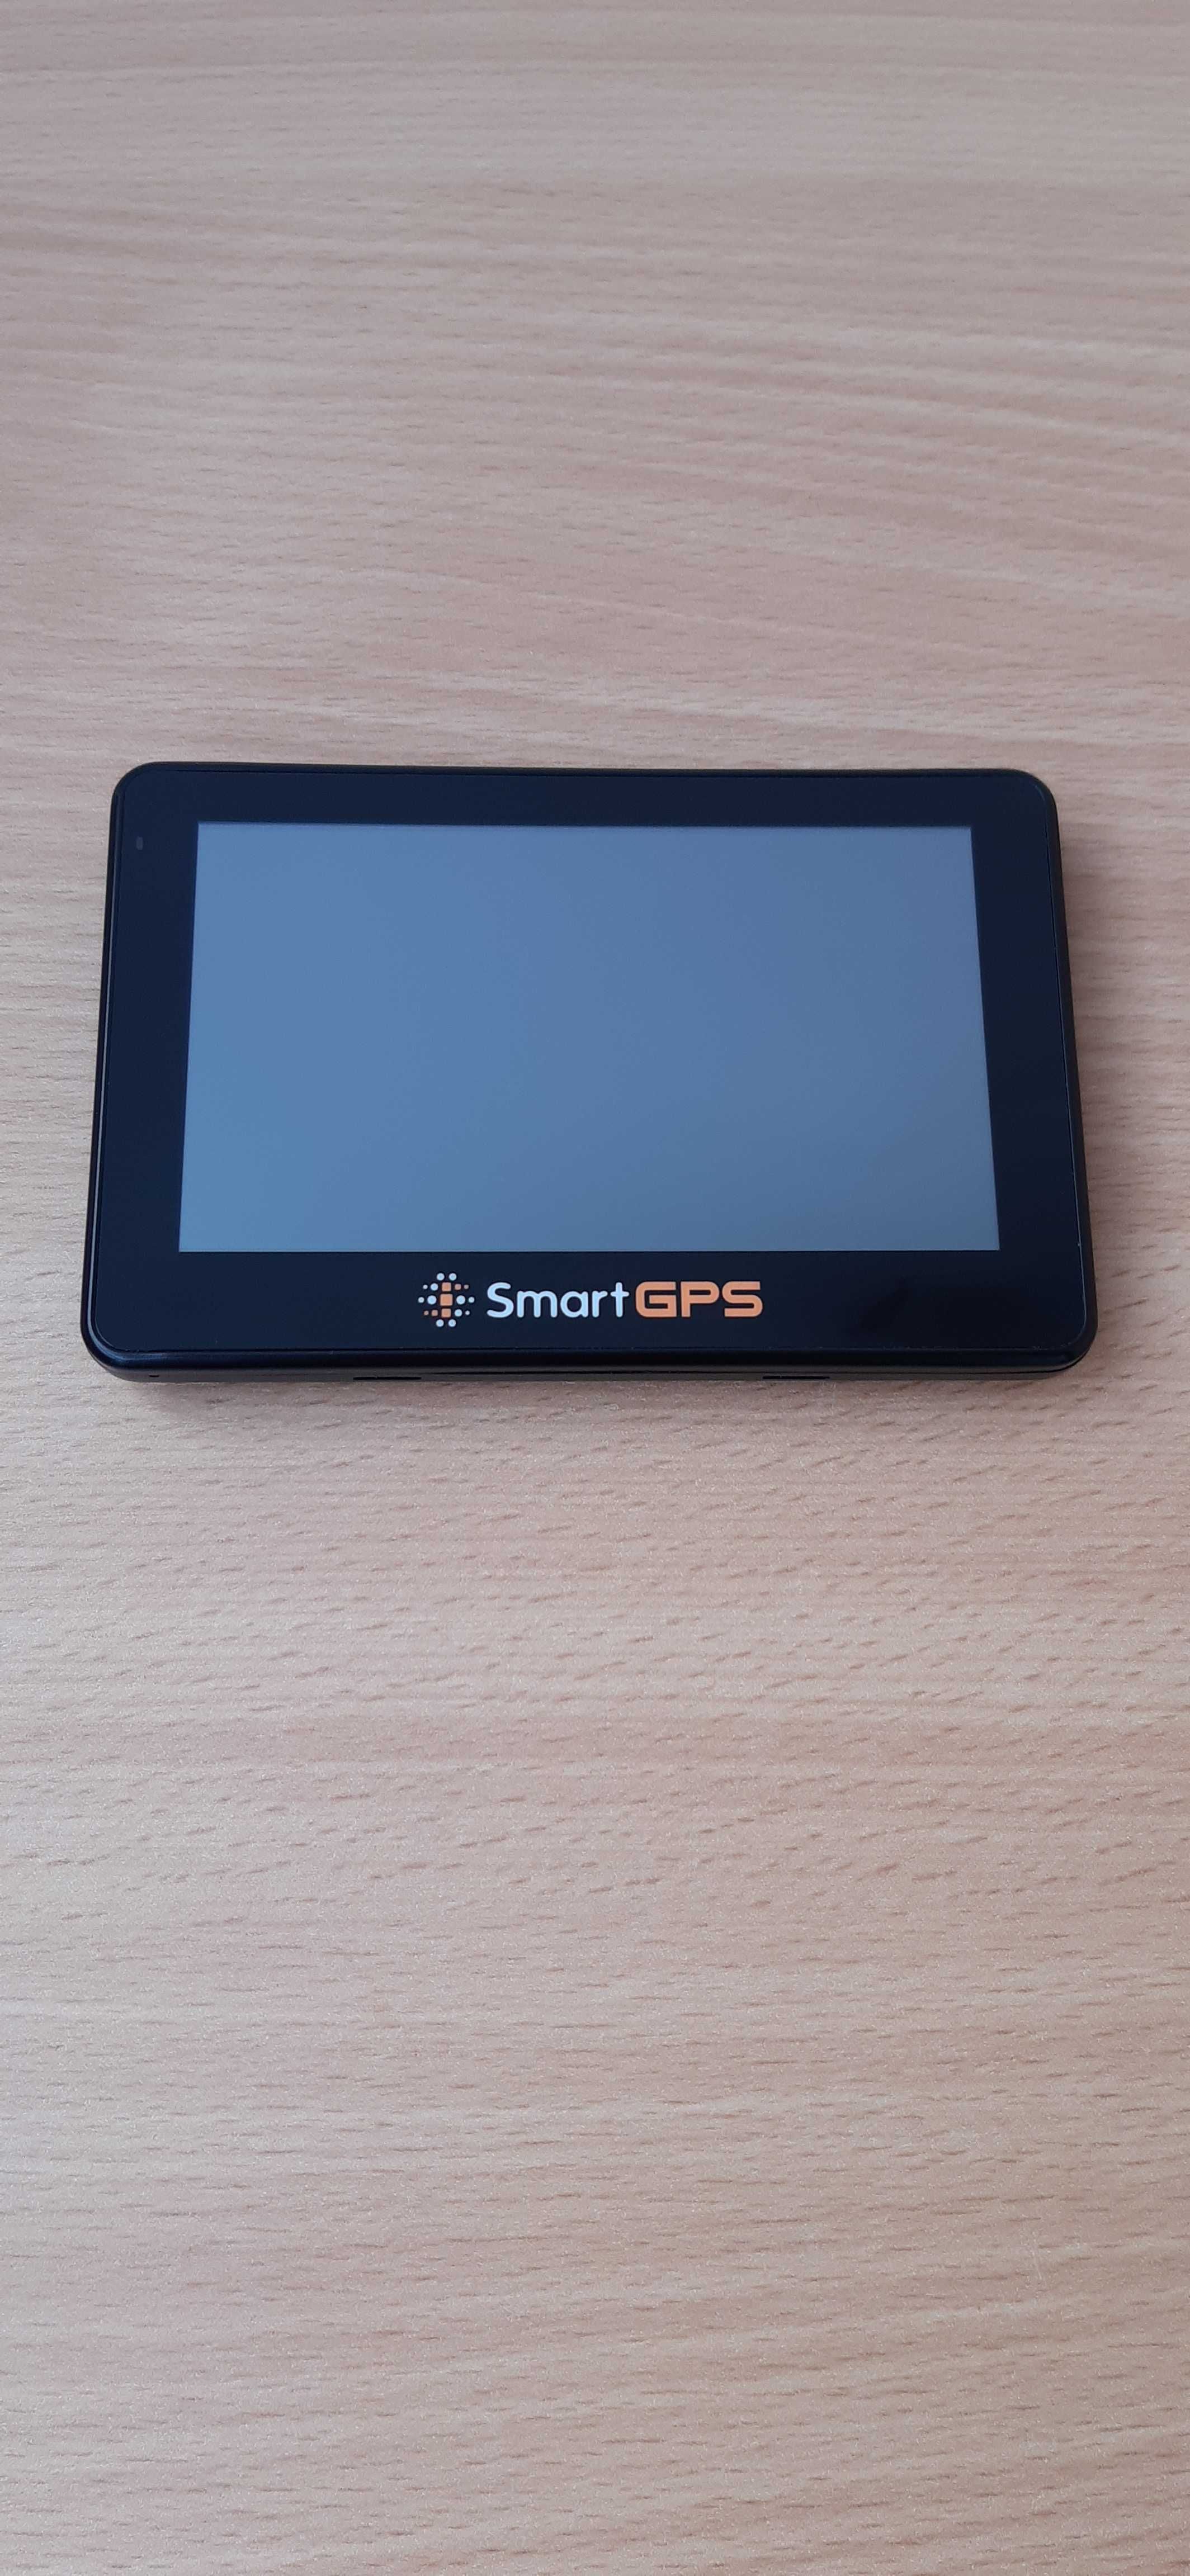 Nawigacja samochodowa SmartGPS SG430,kompletny zestaw,pudełko,stan bdb